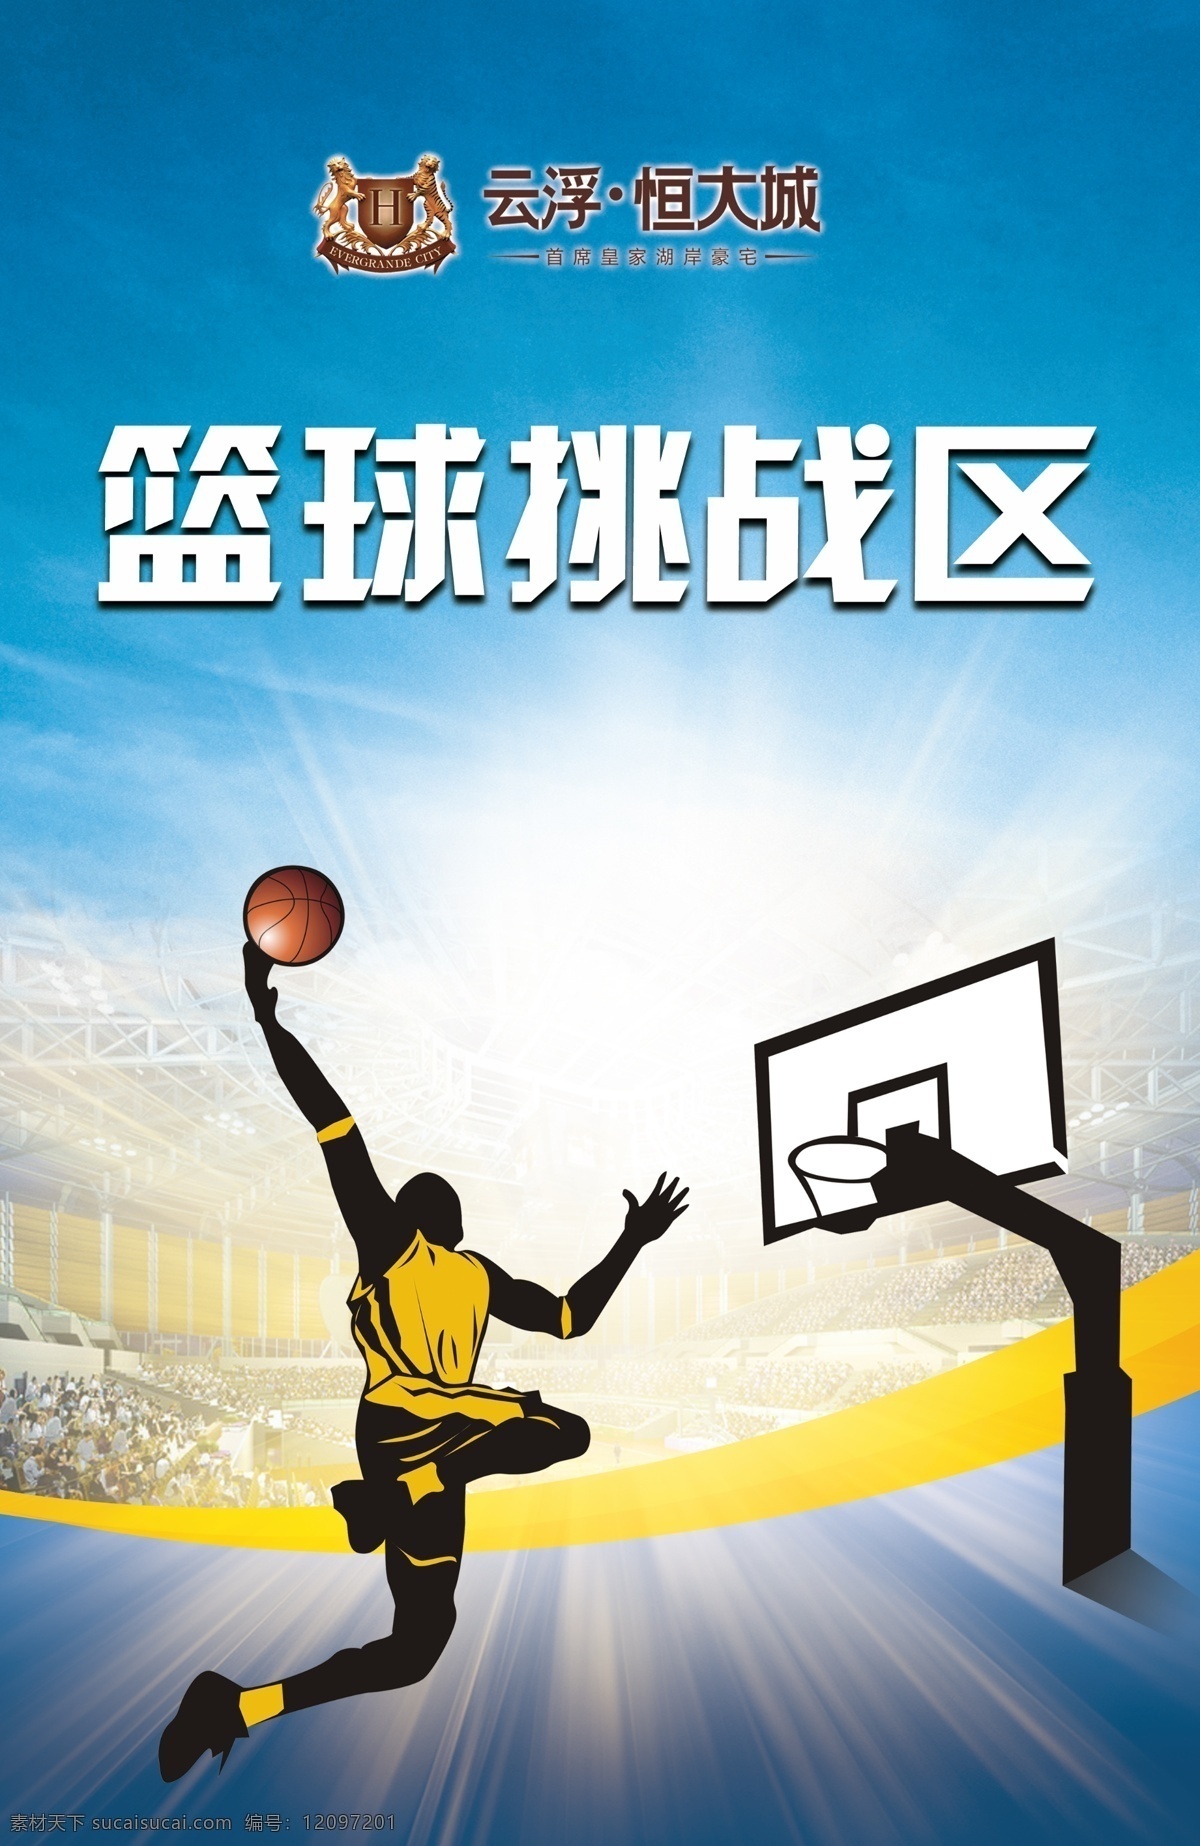 篮球挑战区 篮球 卡通篮球员 篮球员 扣篮 恒大 云浮 logo 发散光芒 篮球场 蓝天 展板 展板模板 广告设计模板 源文件